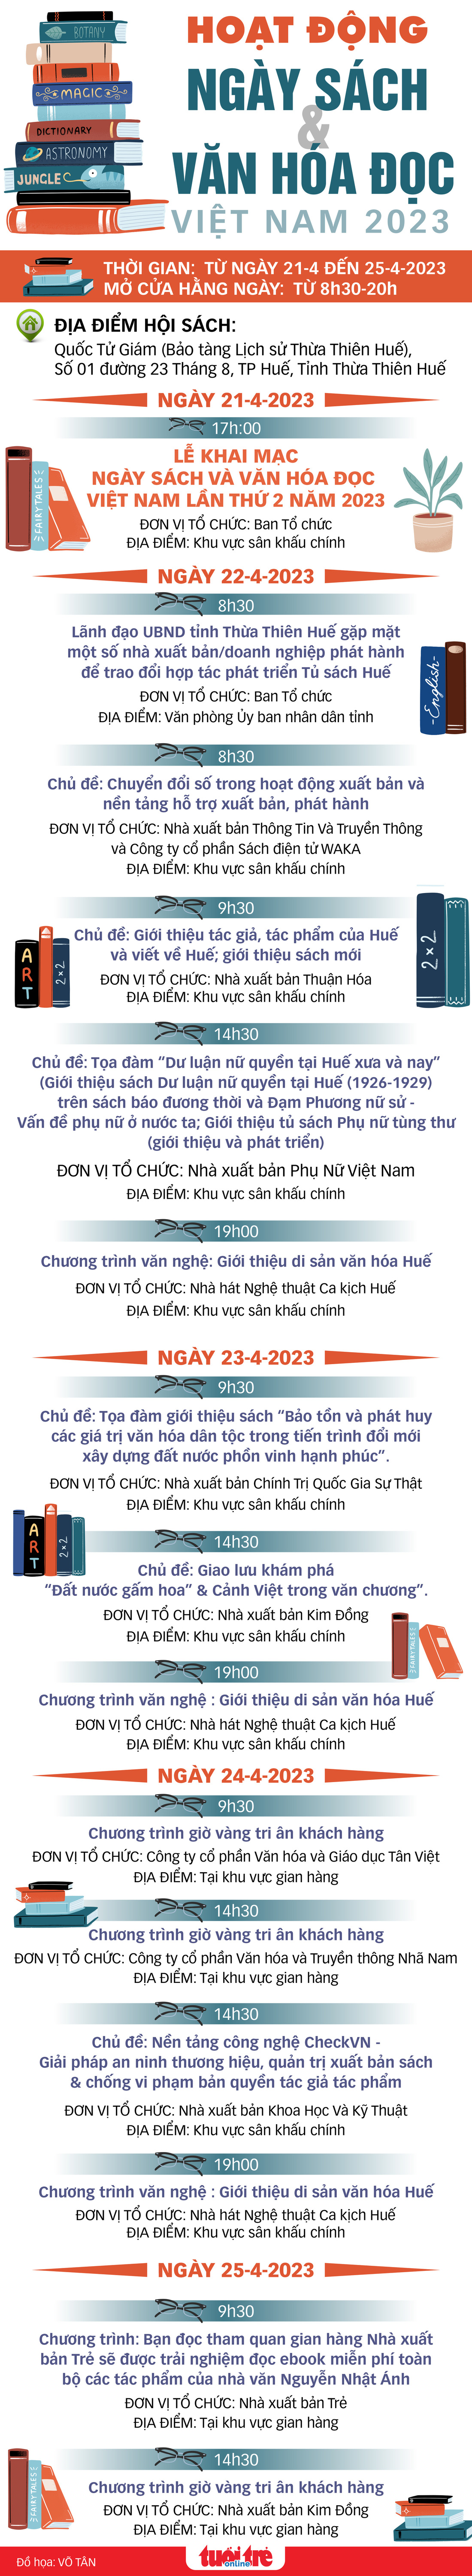 Infographic Ngày sách và văn hóa đọc - Thiết kế: VÕ TÂN